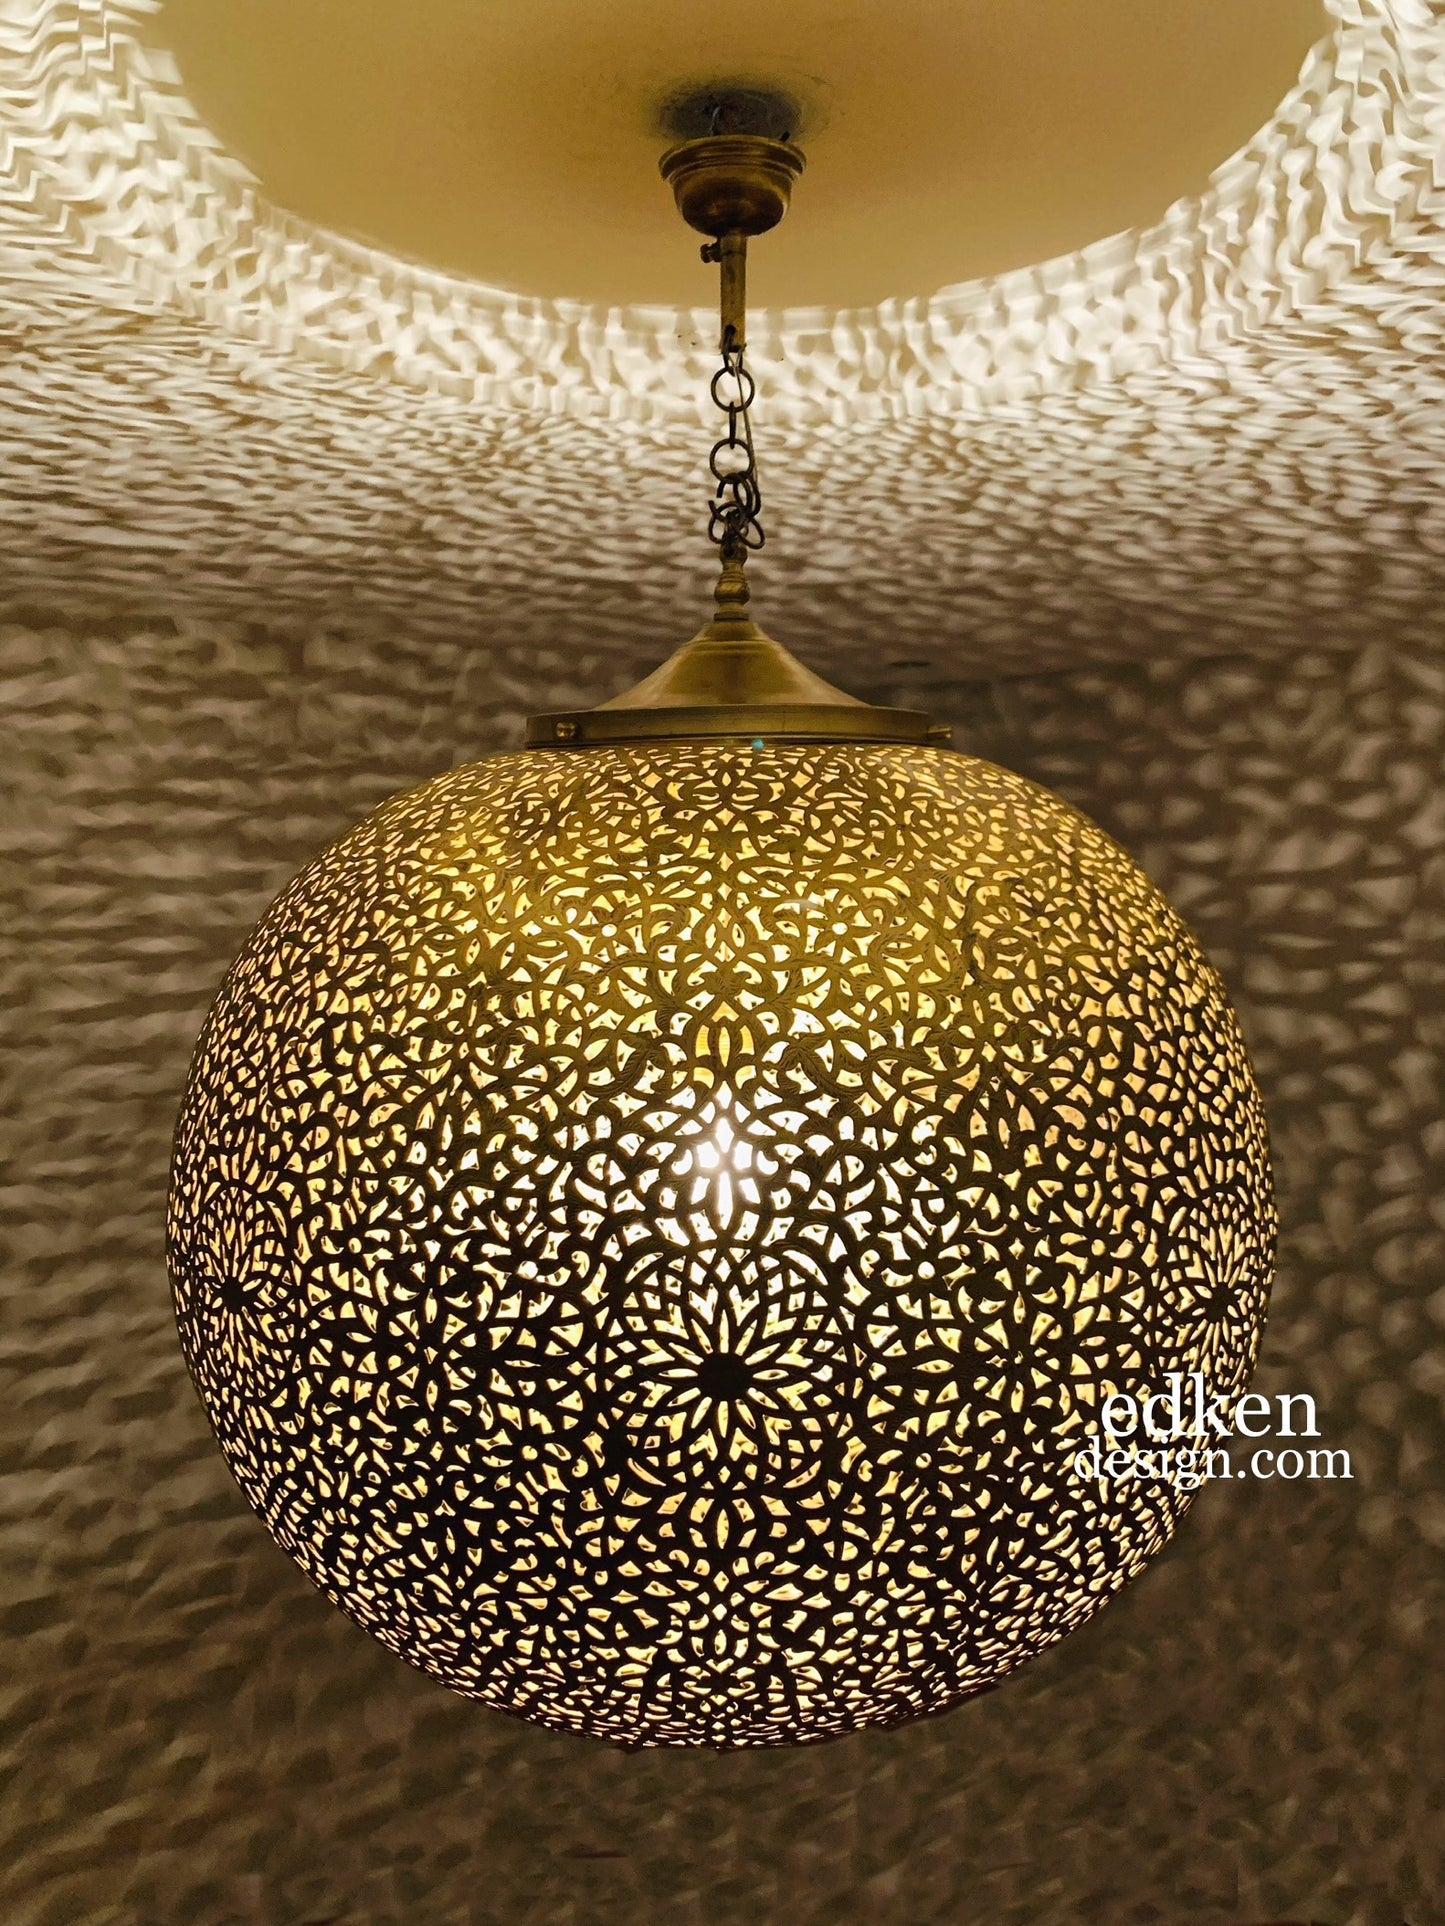 EDKEN LIGHTS - Closer view Morocco Ceiling Lamp Shades Globe Shape Fixture Ball pierced Hanging Brass Lights